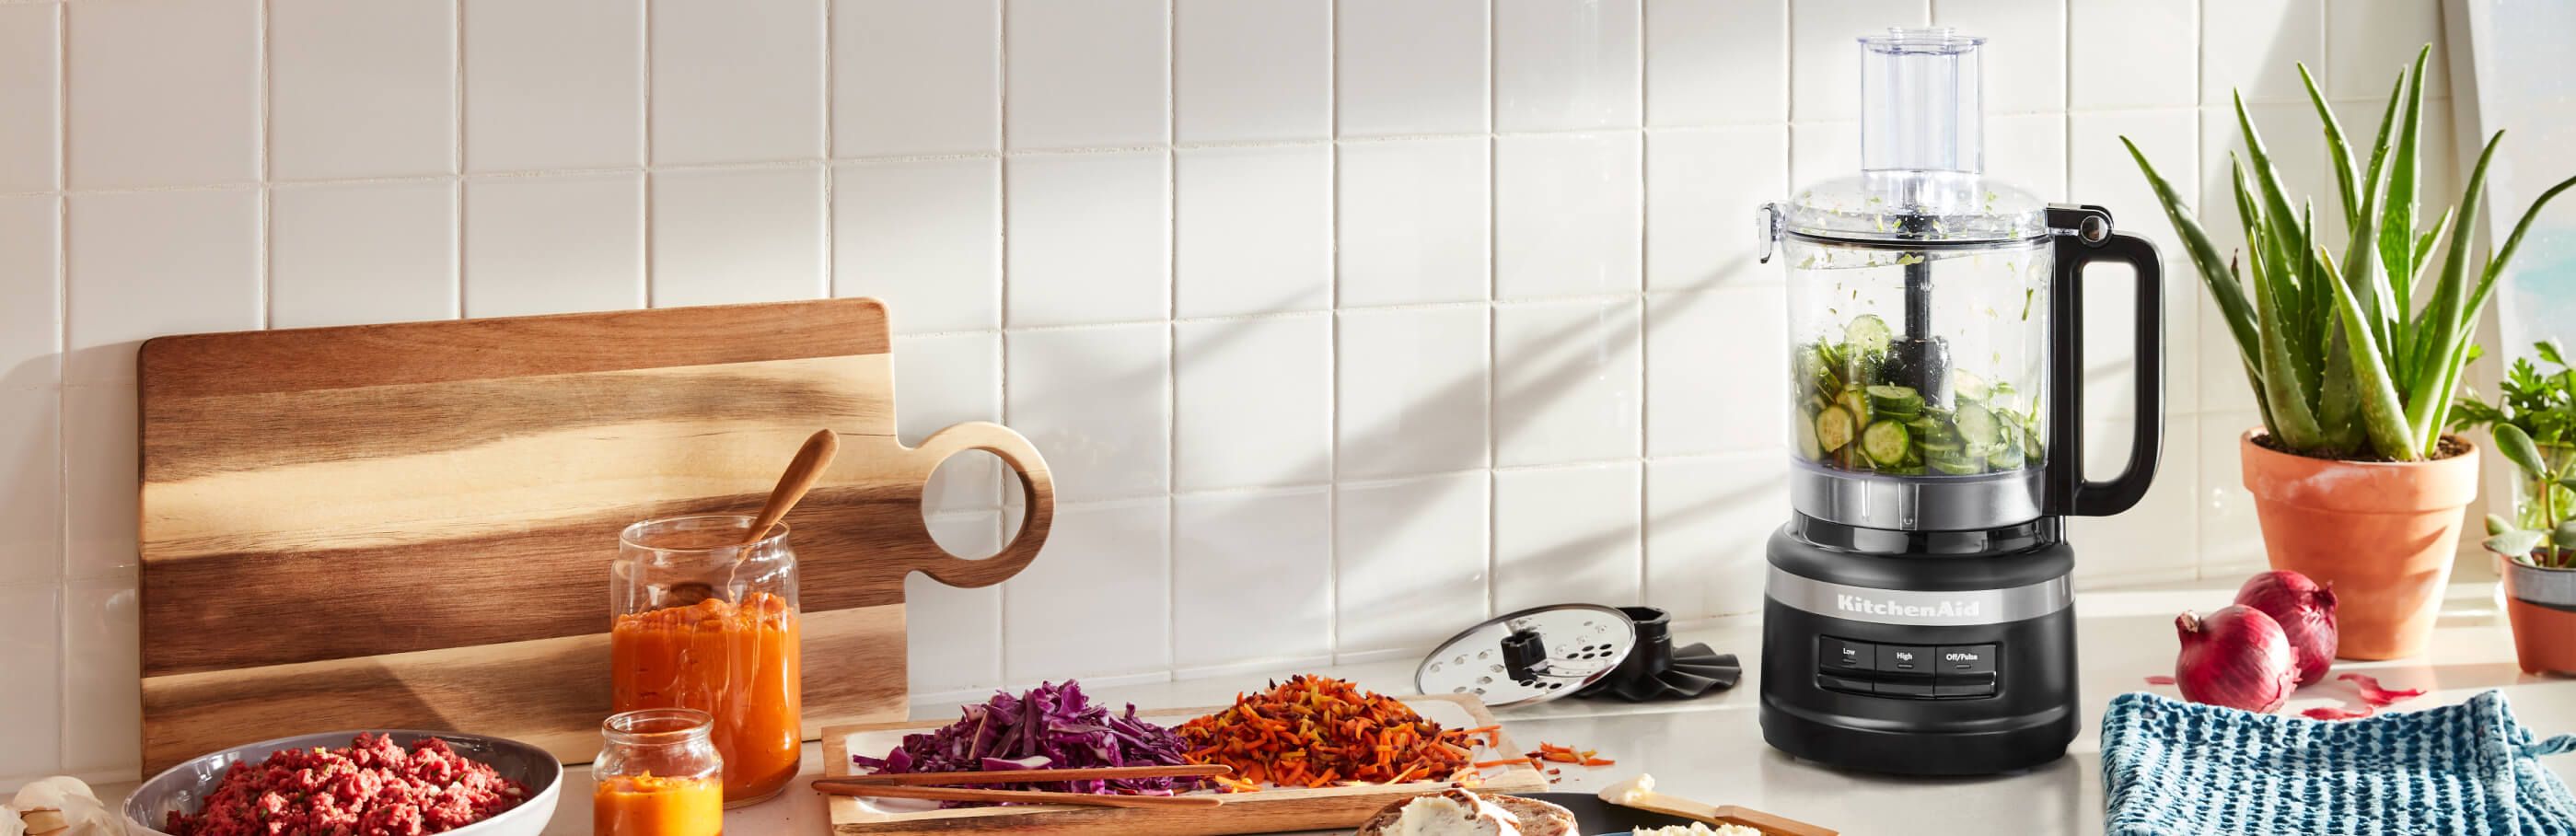 Robot culinaire KitchenAid® blanc sur un comptoir en bois avec des bleuets et autres ingrédients.